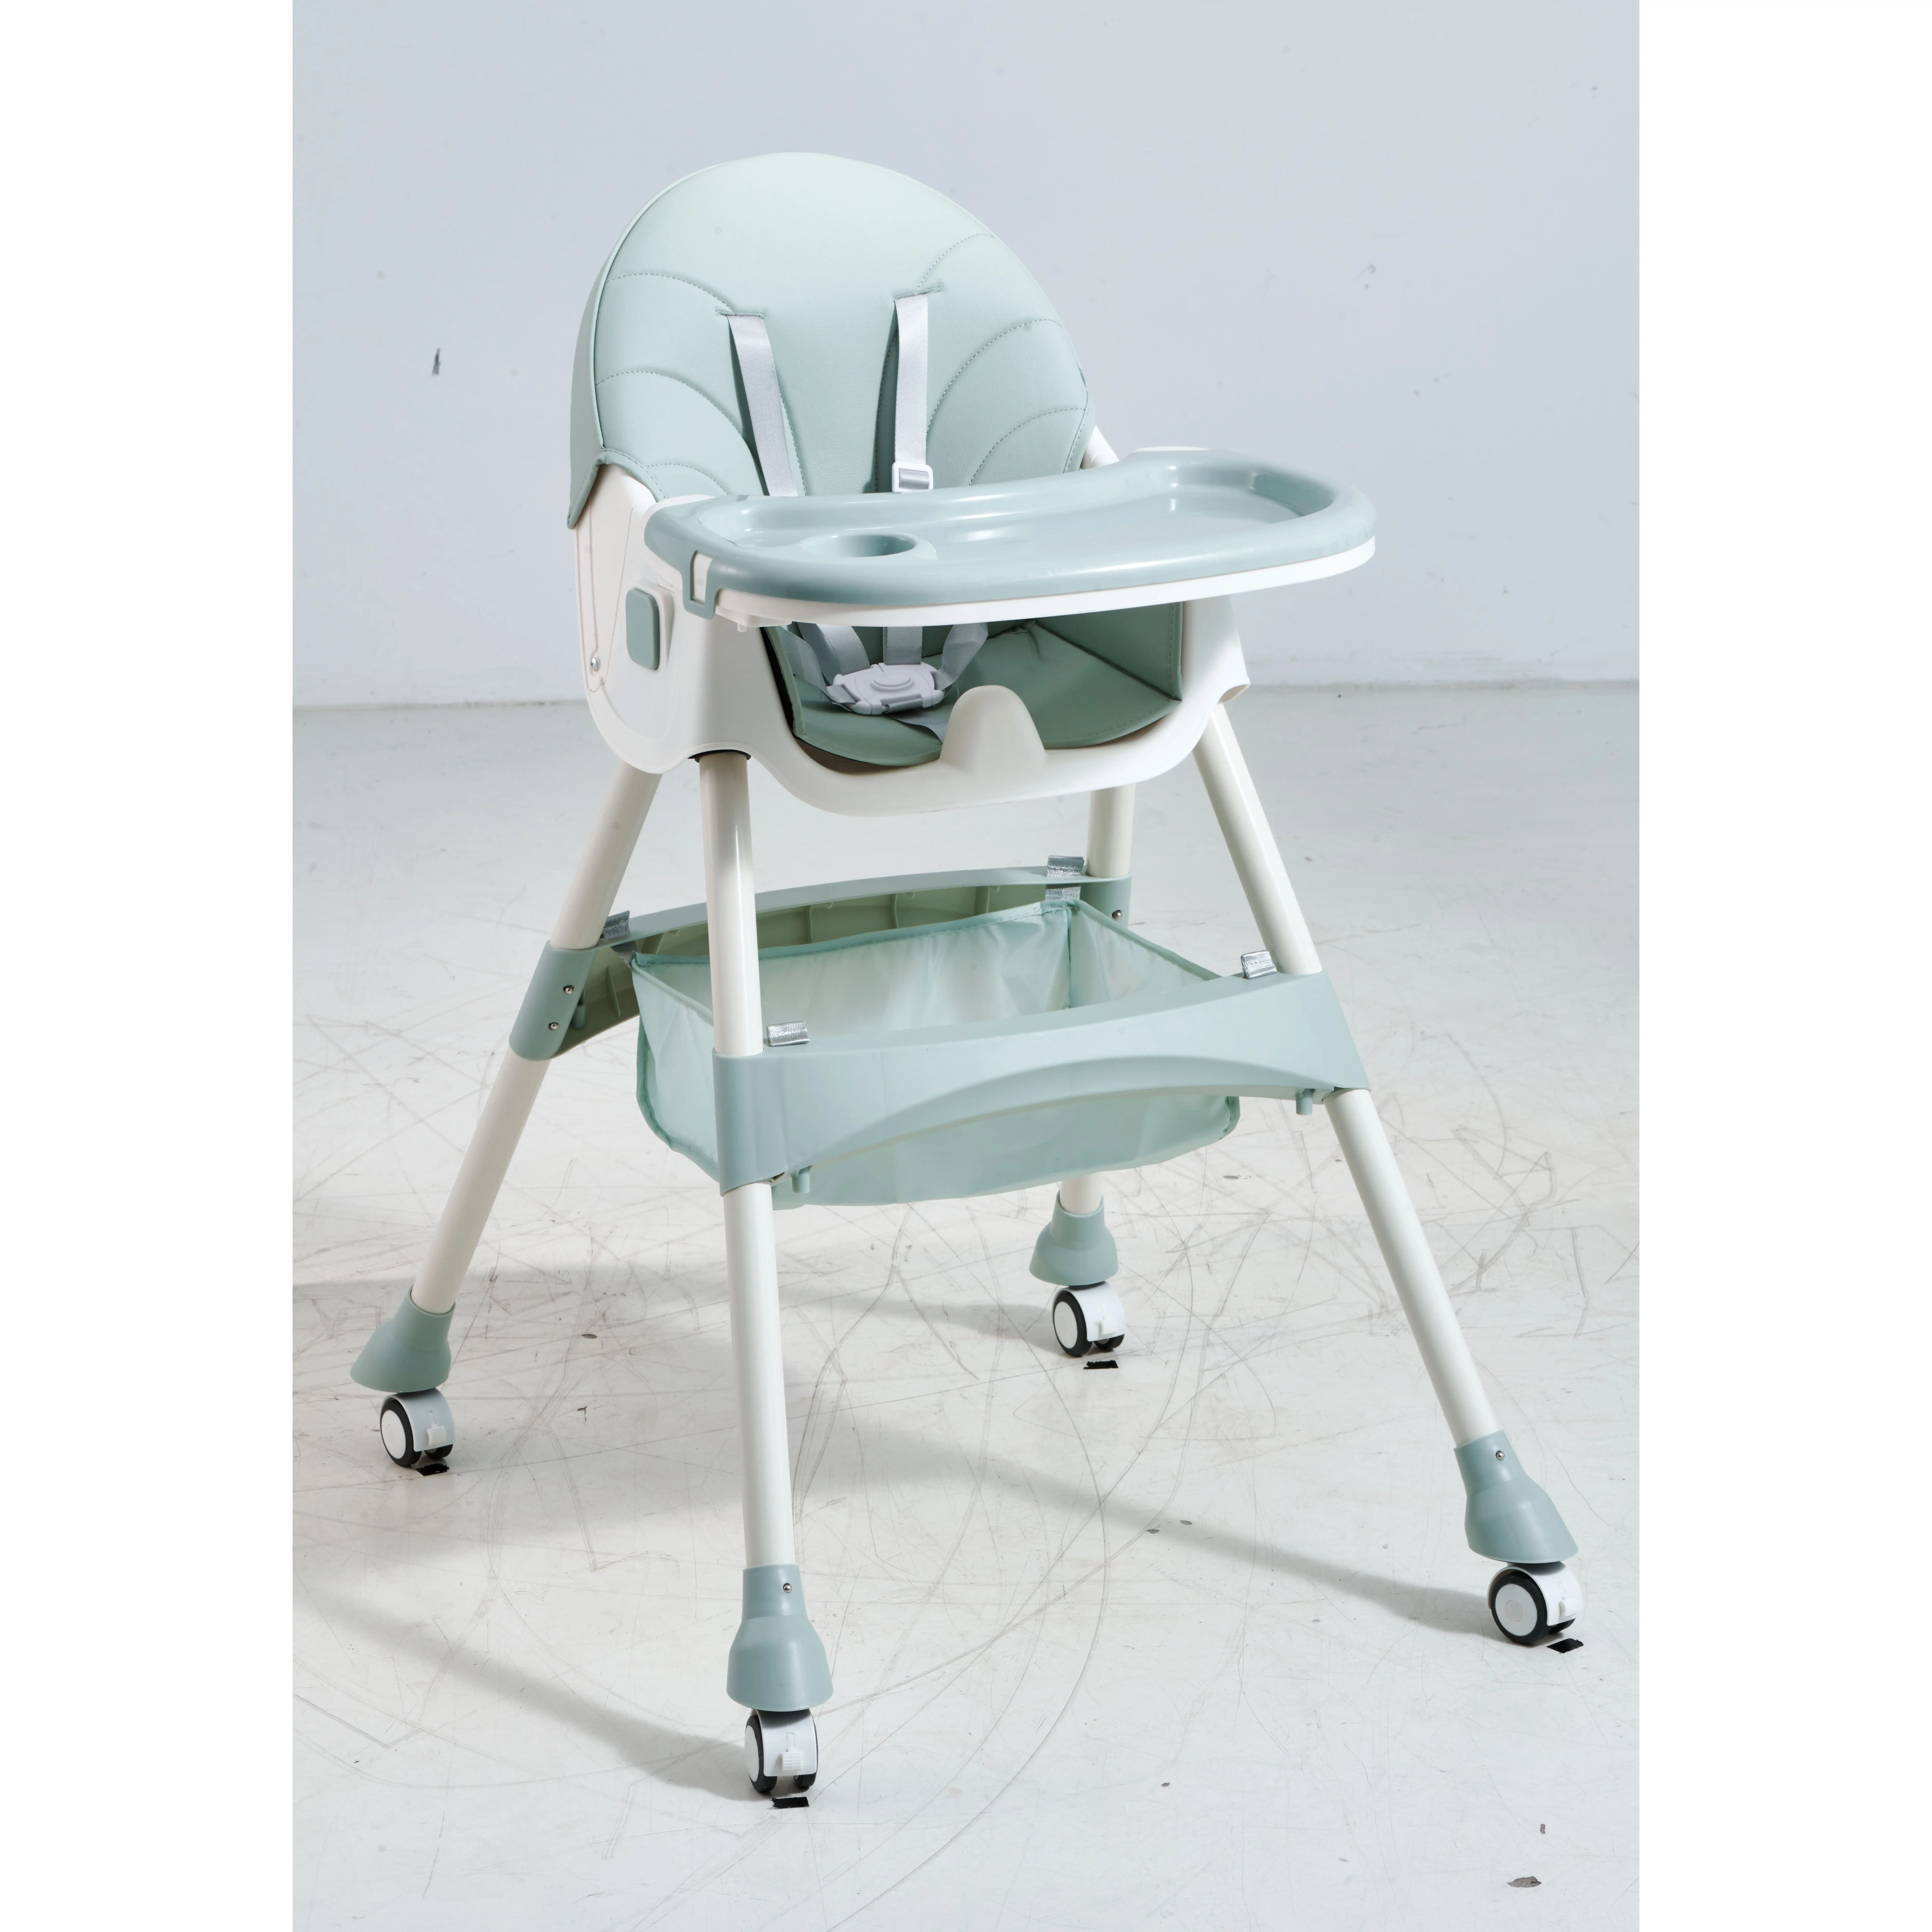 Dobrável Antilop Unicórnio Flutuante Cadeira De Assento De Pelúcia Do Bebê Chão Remoto Fácil Crianças Crianças Bow Chair Em Yiwu